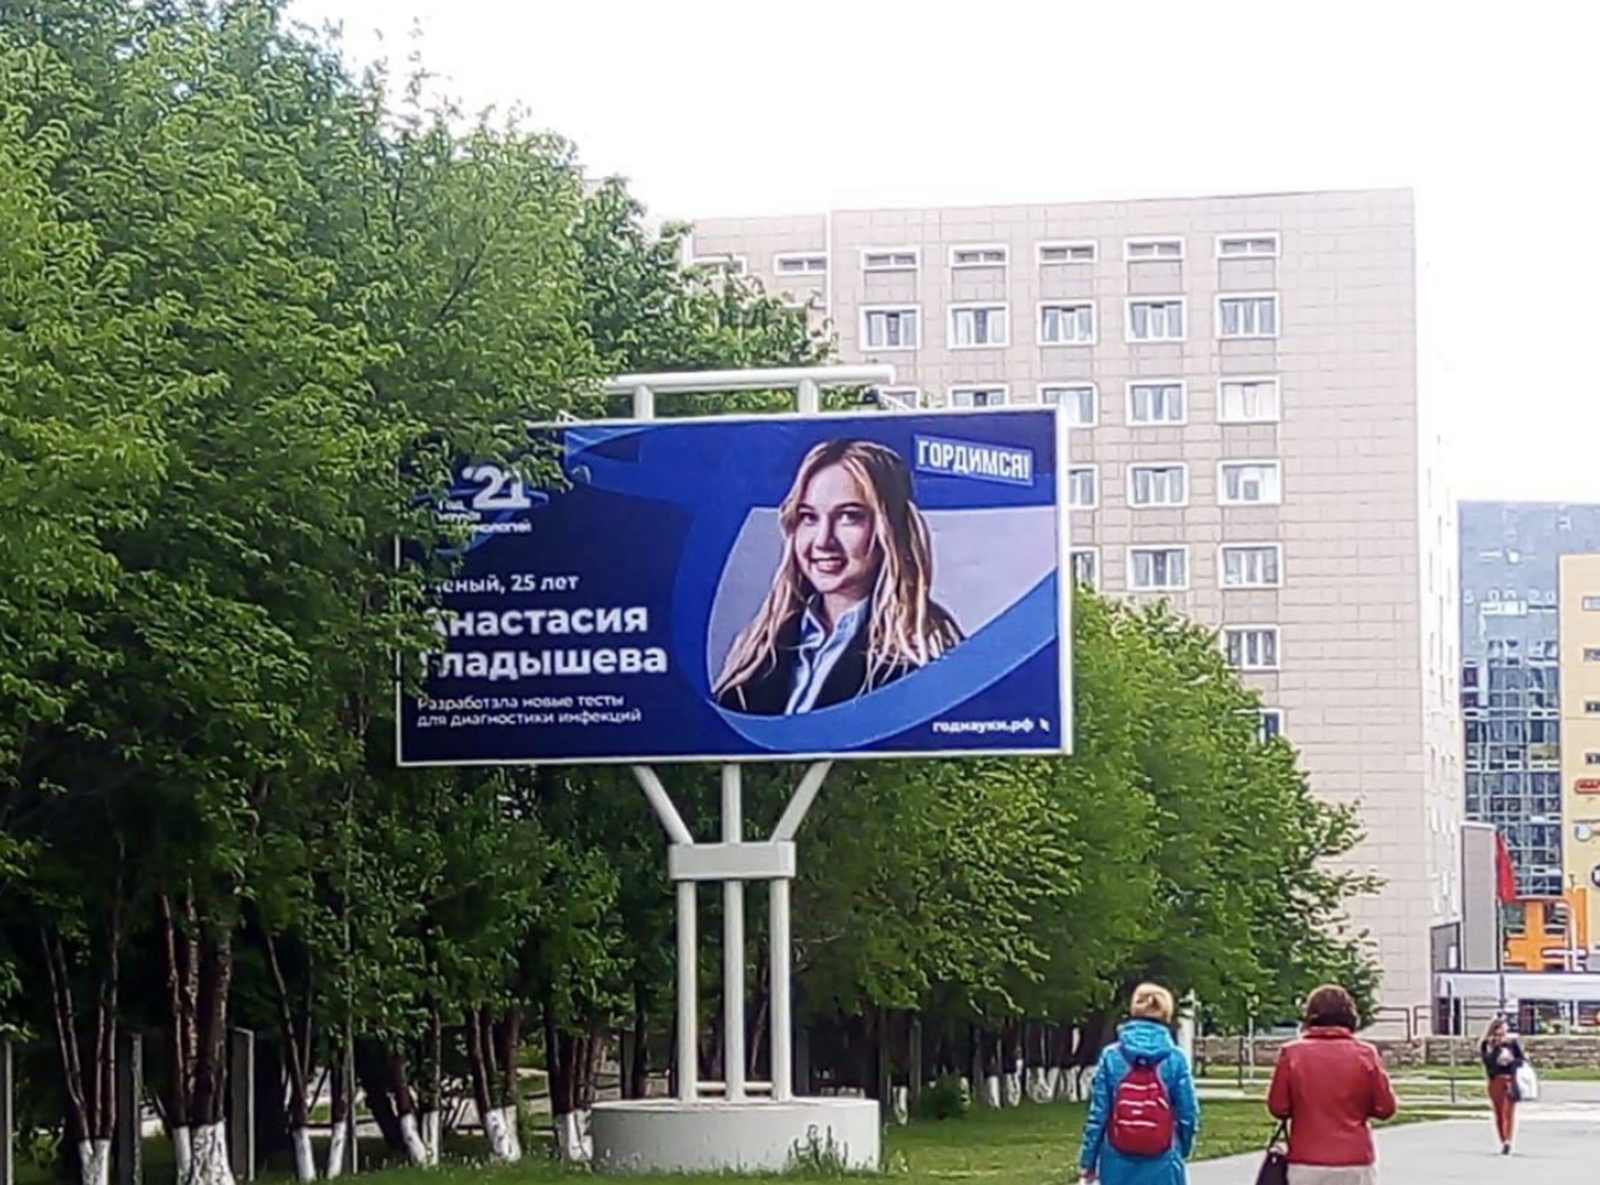 В Год науки и технологий в 55 регионах России появились билборды с изображениями ученых